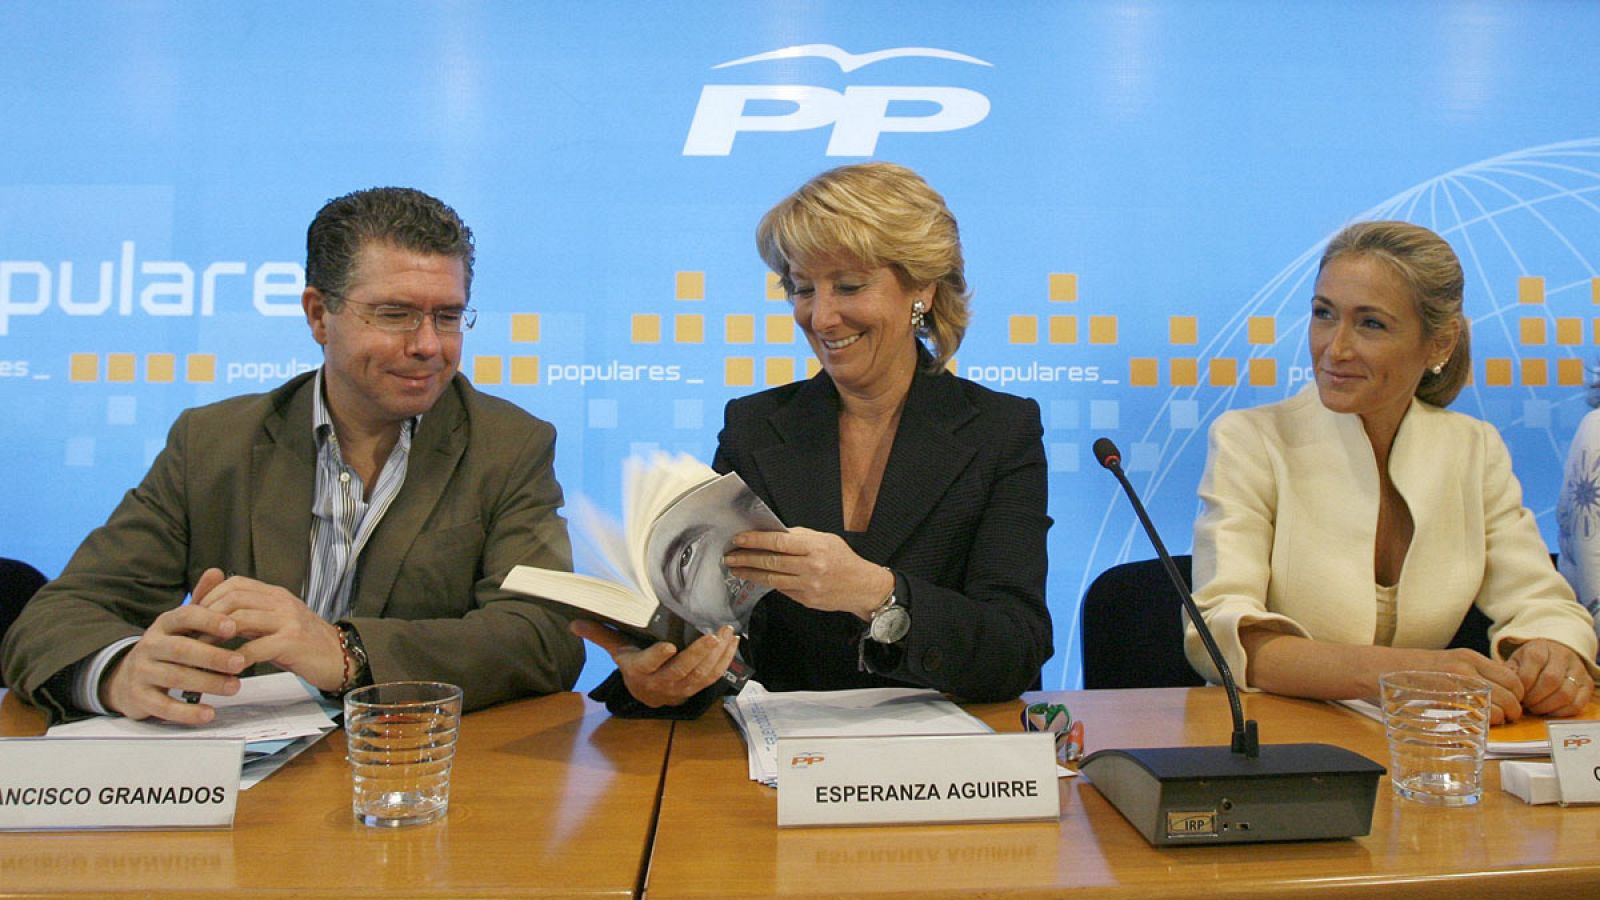 Imagen de archivo en la que aparecen Esperanza Aguirre (c), Francisco Granados (i) y Cristina Cifuentes.